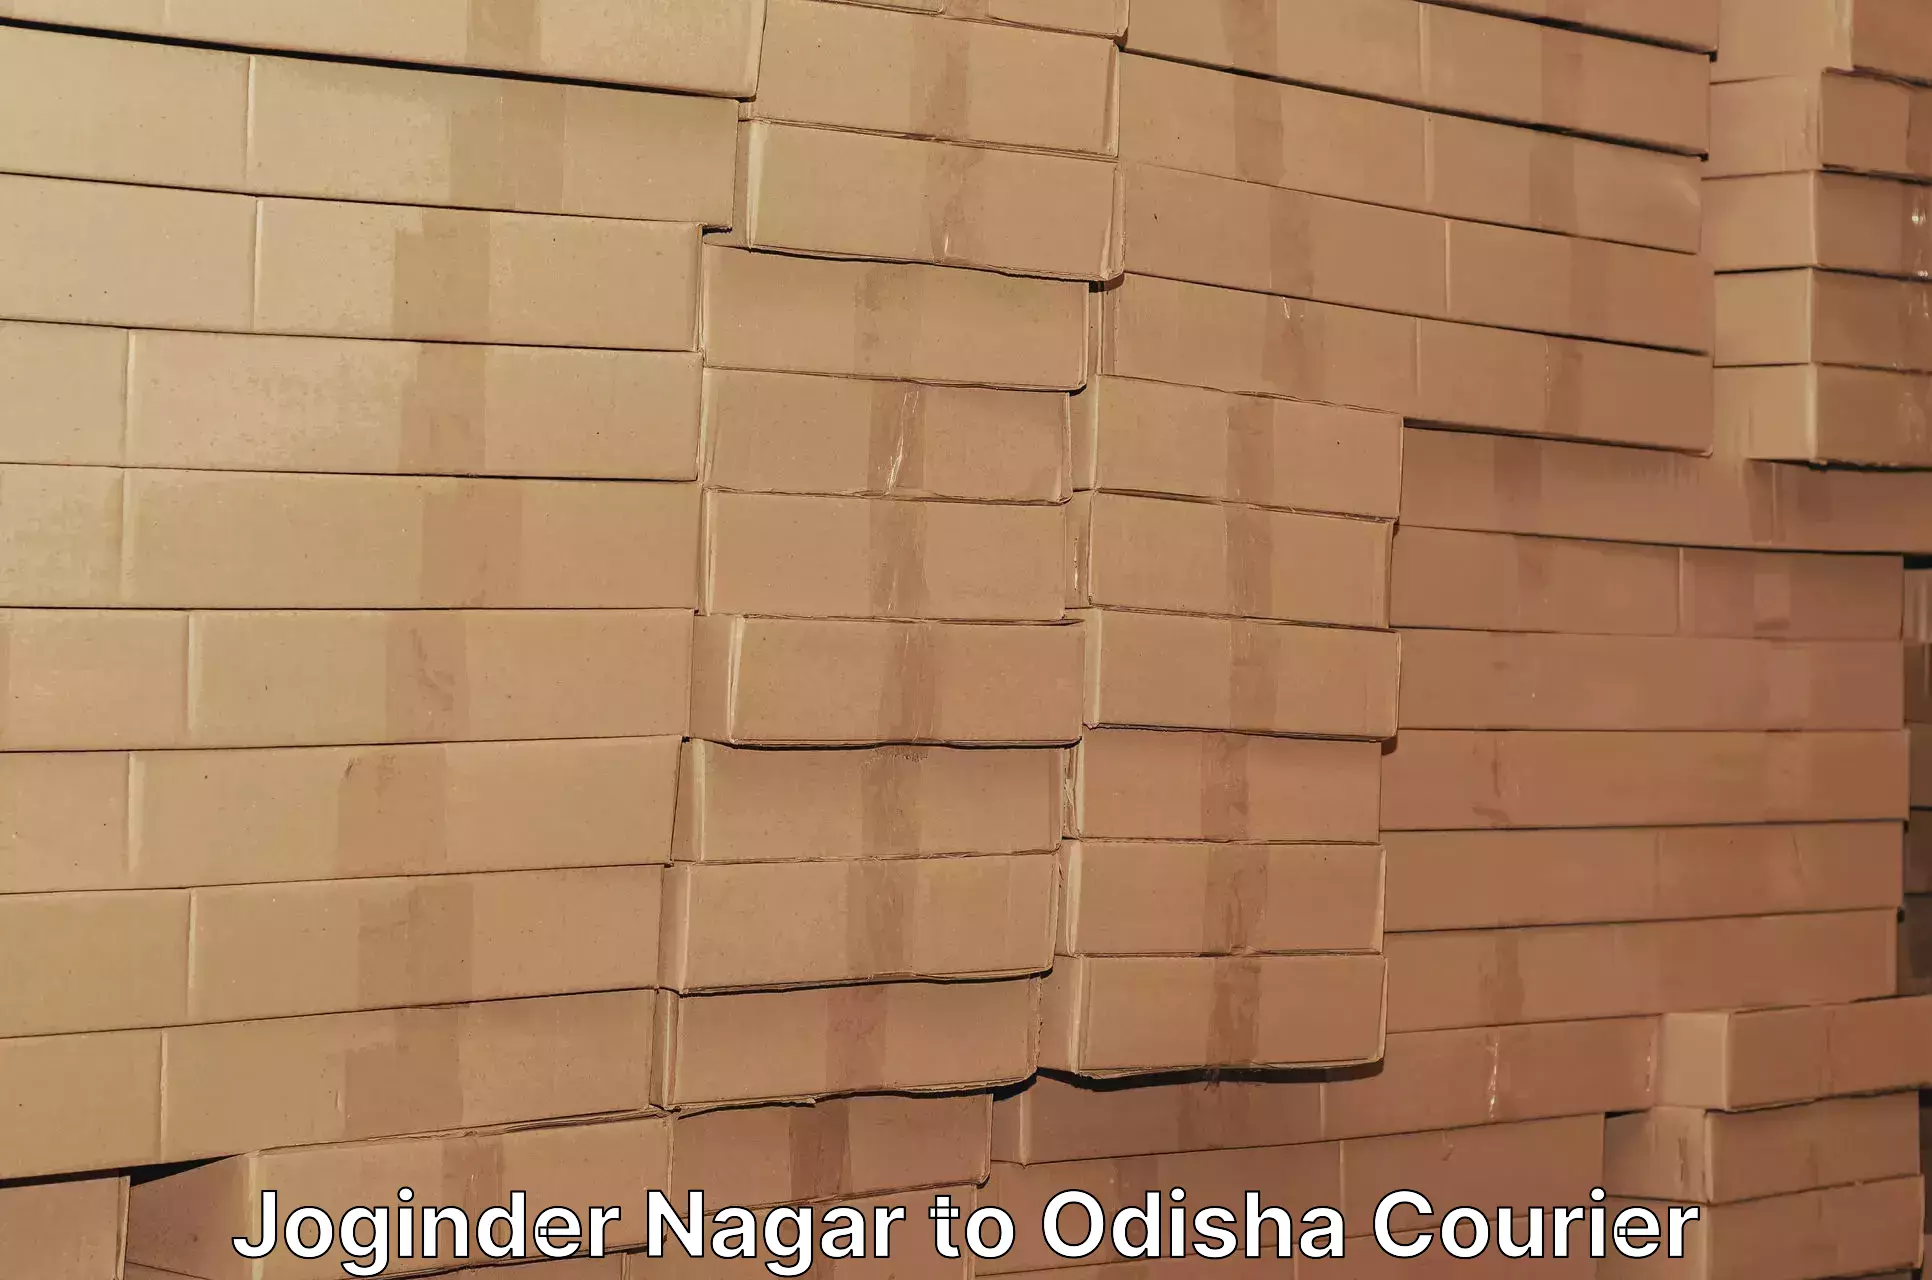 Parcel handling and care Joginder Nagar to Odisha